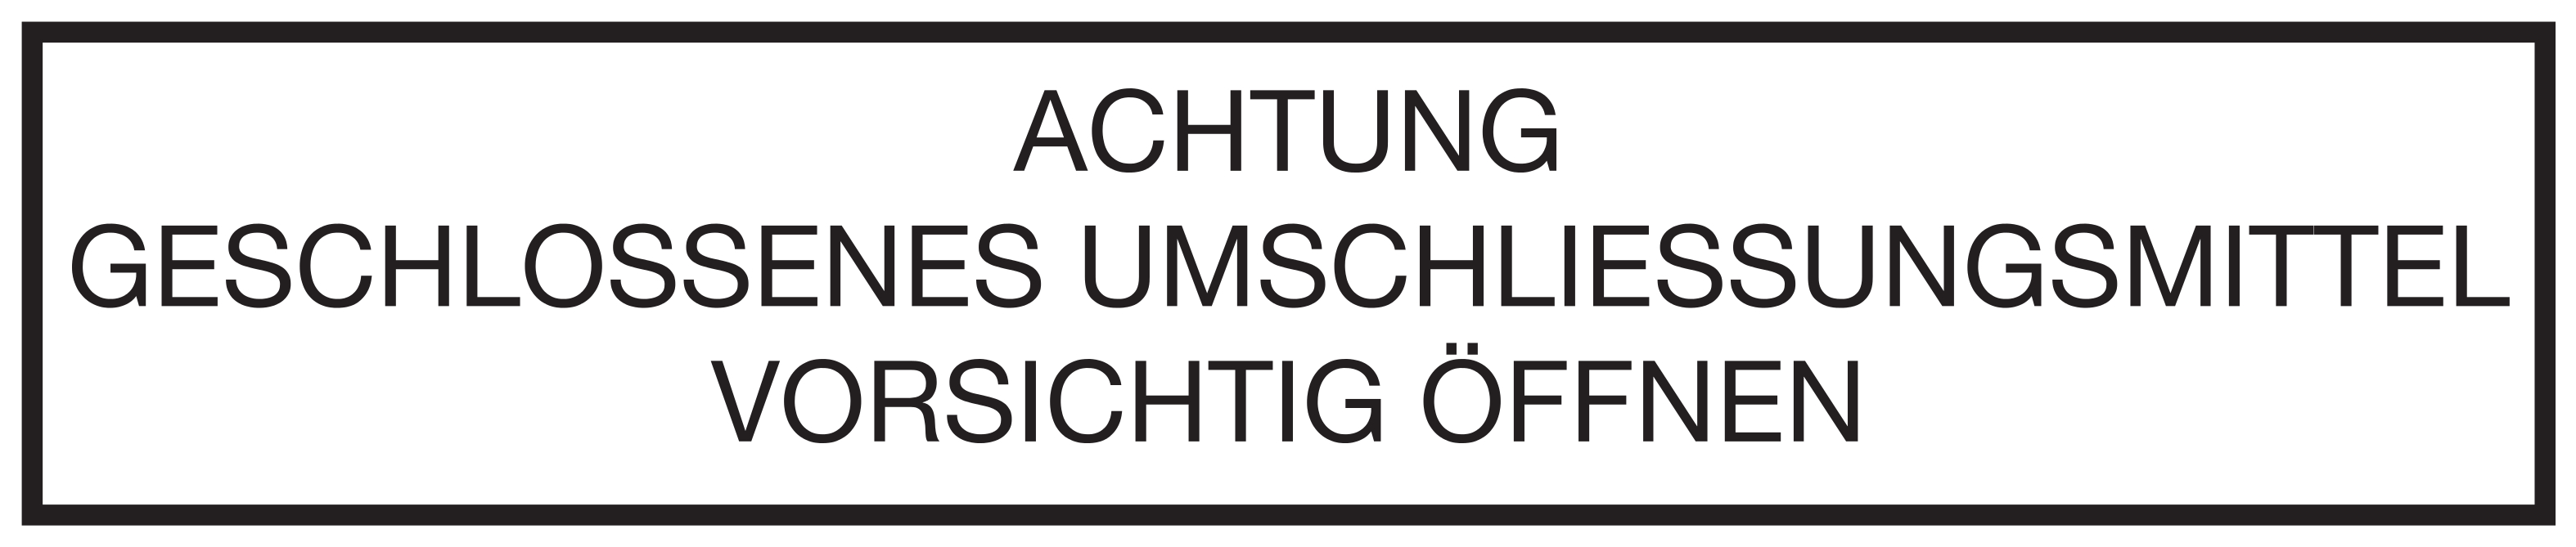 Verkehrsverlag J. Fischer - Kennzeichen PVC Aufkleber Lithium